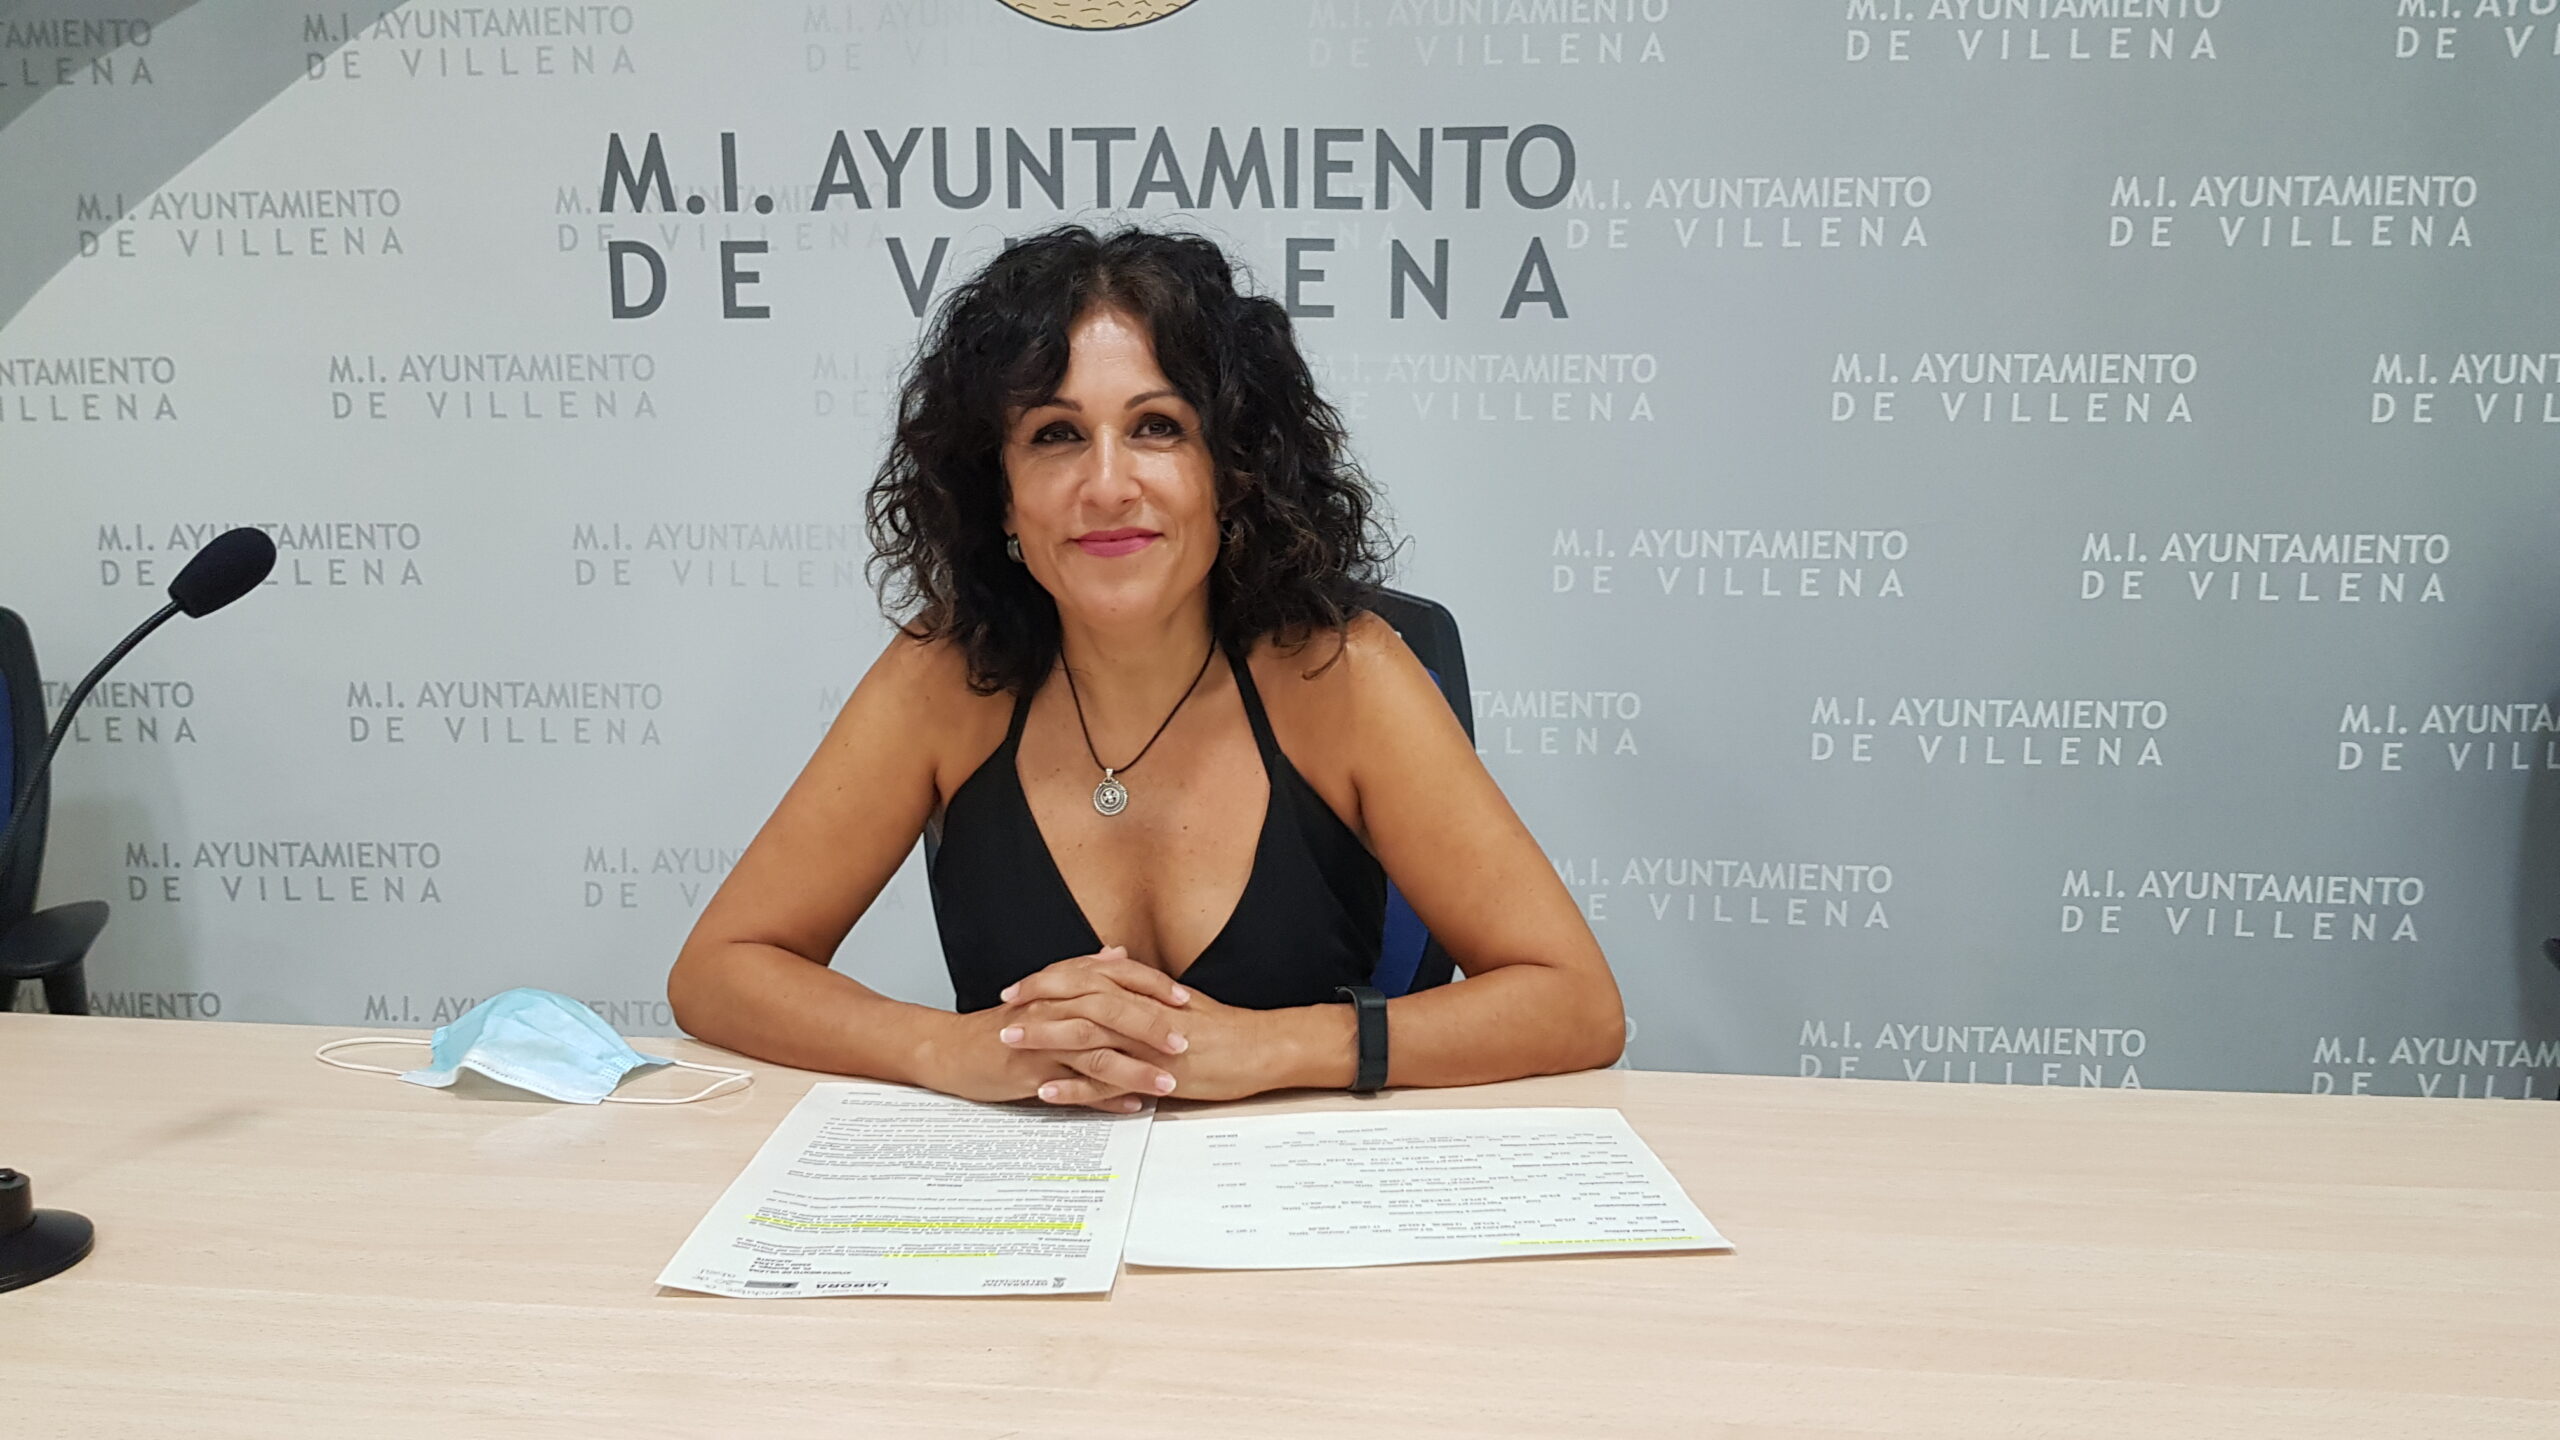 Villena contratará a 5 desempleados de más de 30 años